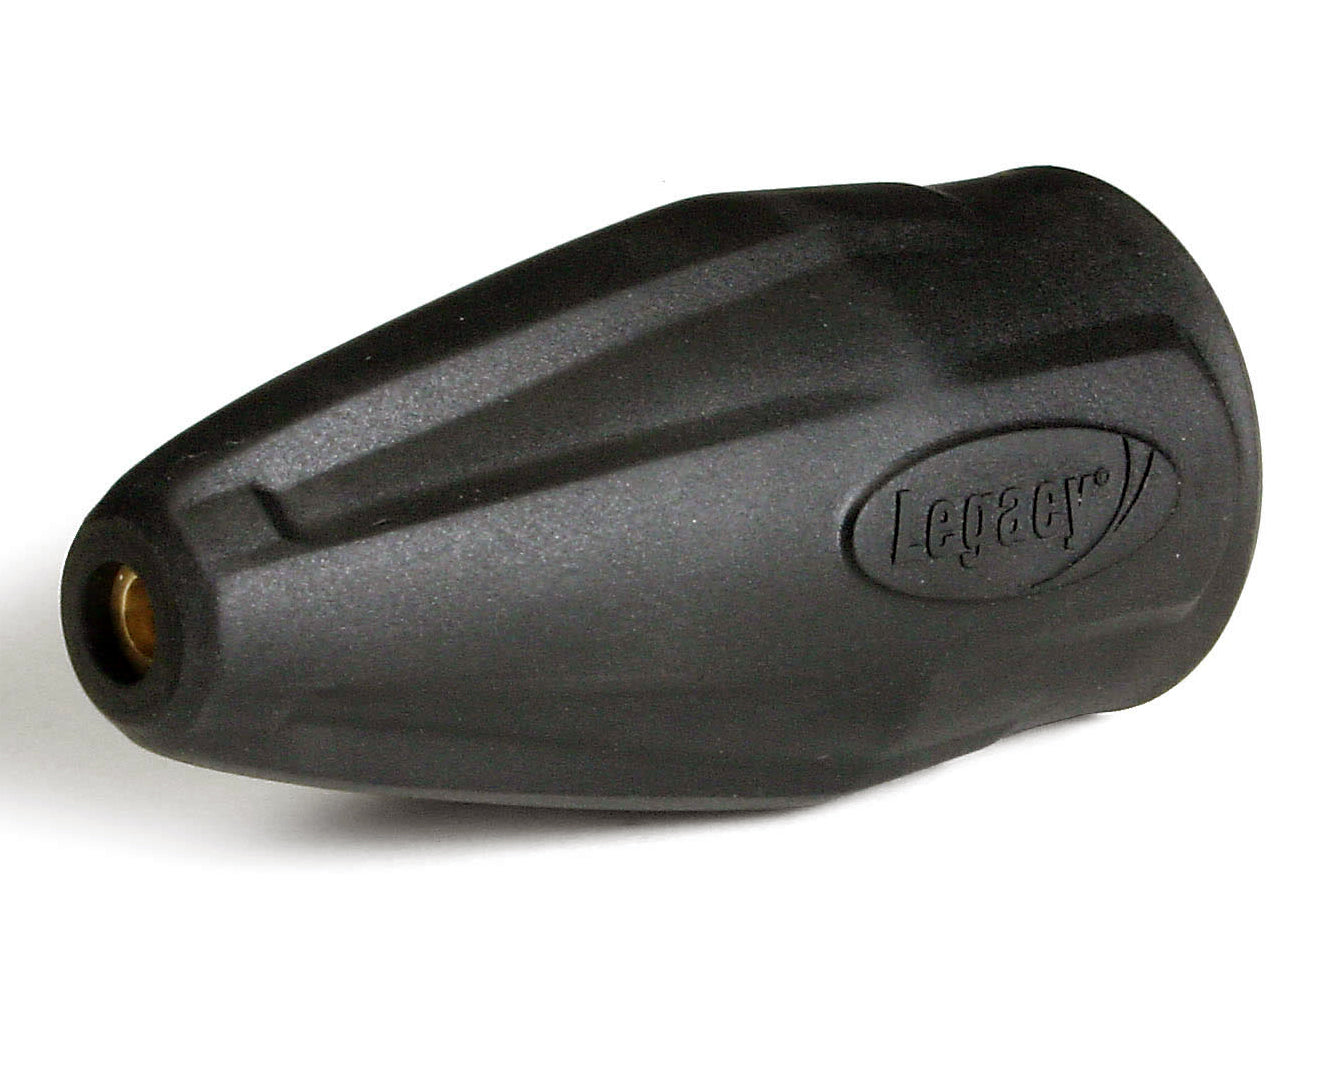 Legacy 9.302-243.0 4350 PSI Nozzle #4.0 Hotsy / Shark Revolution Turbo Nozzle